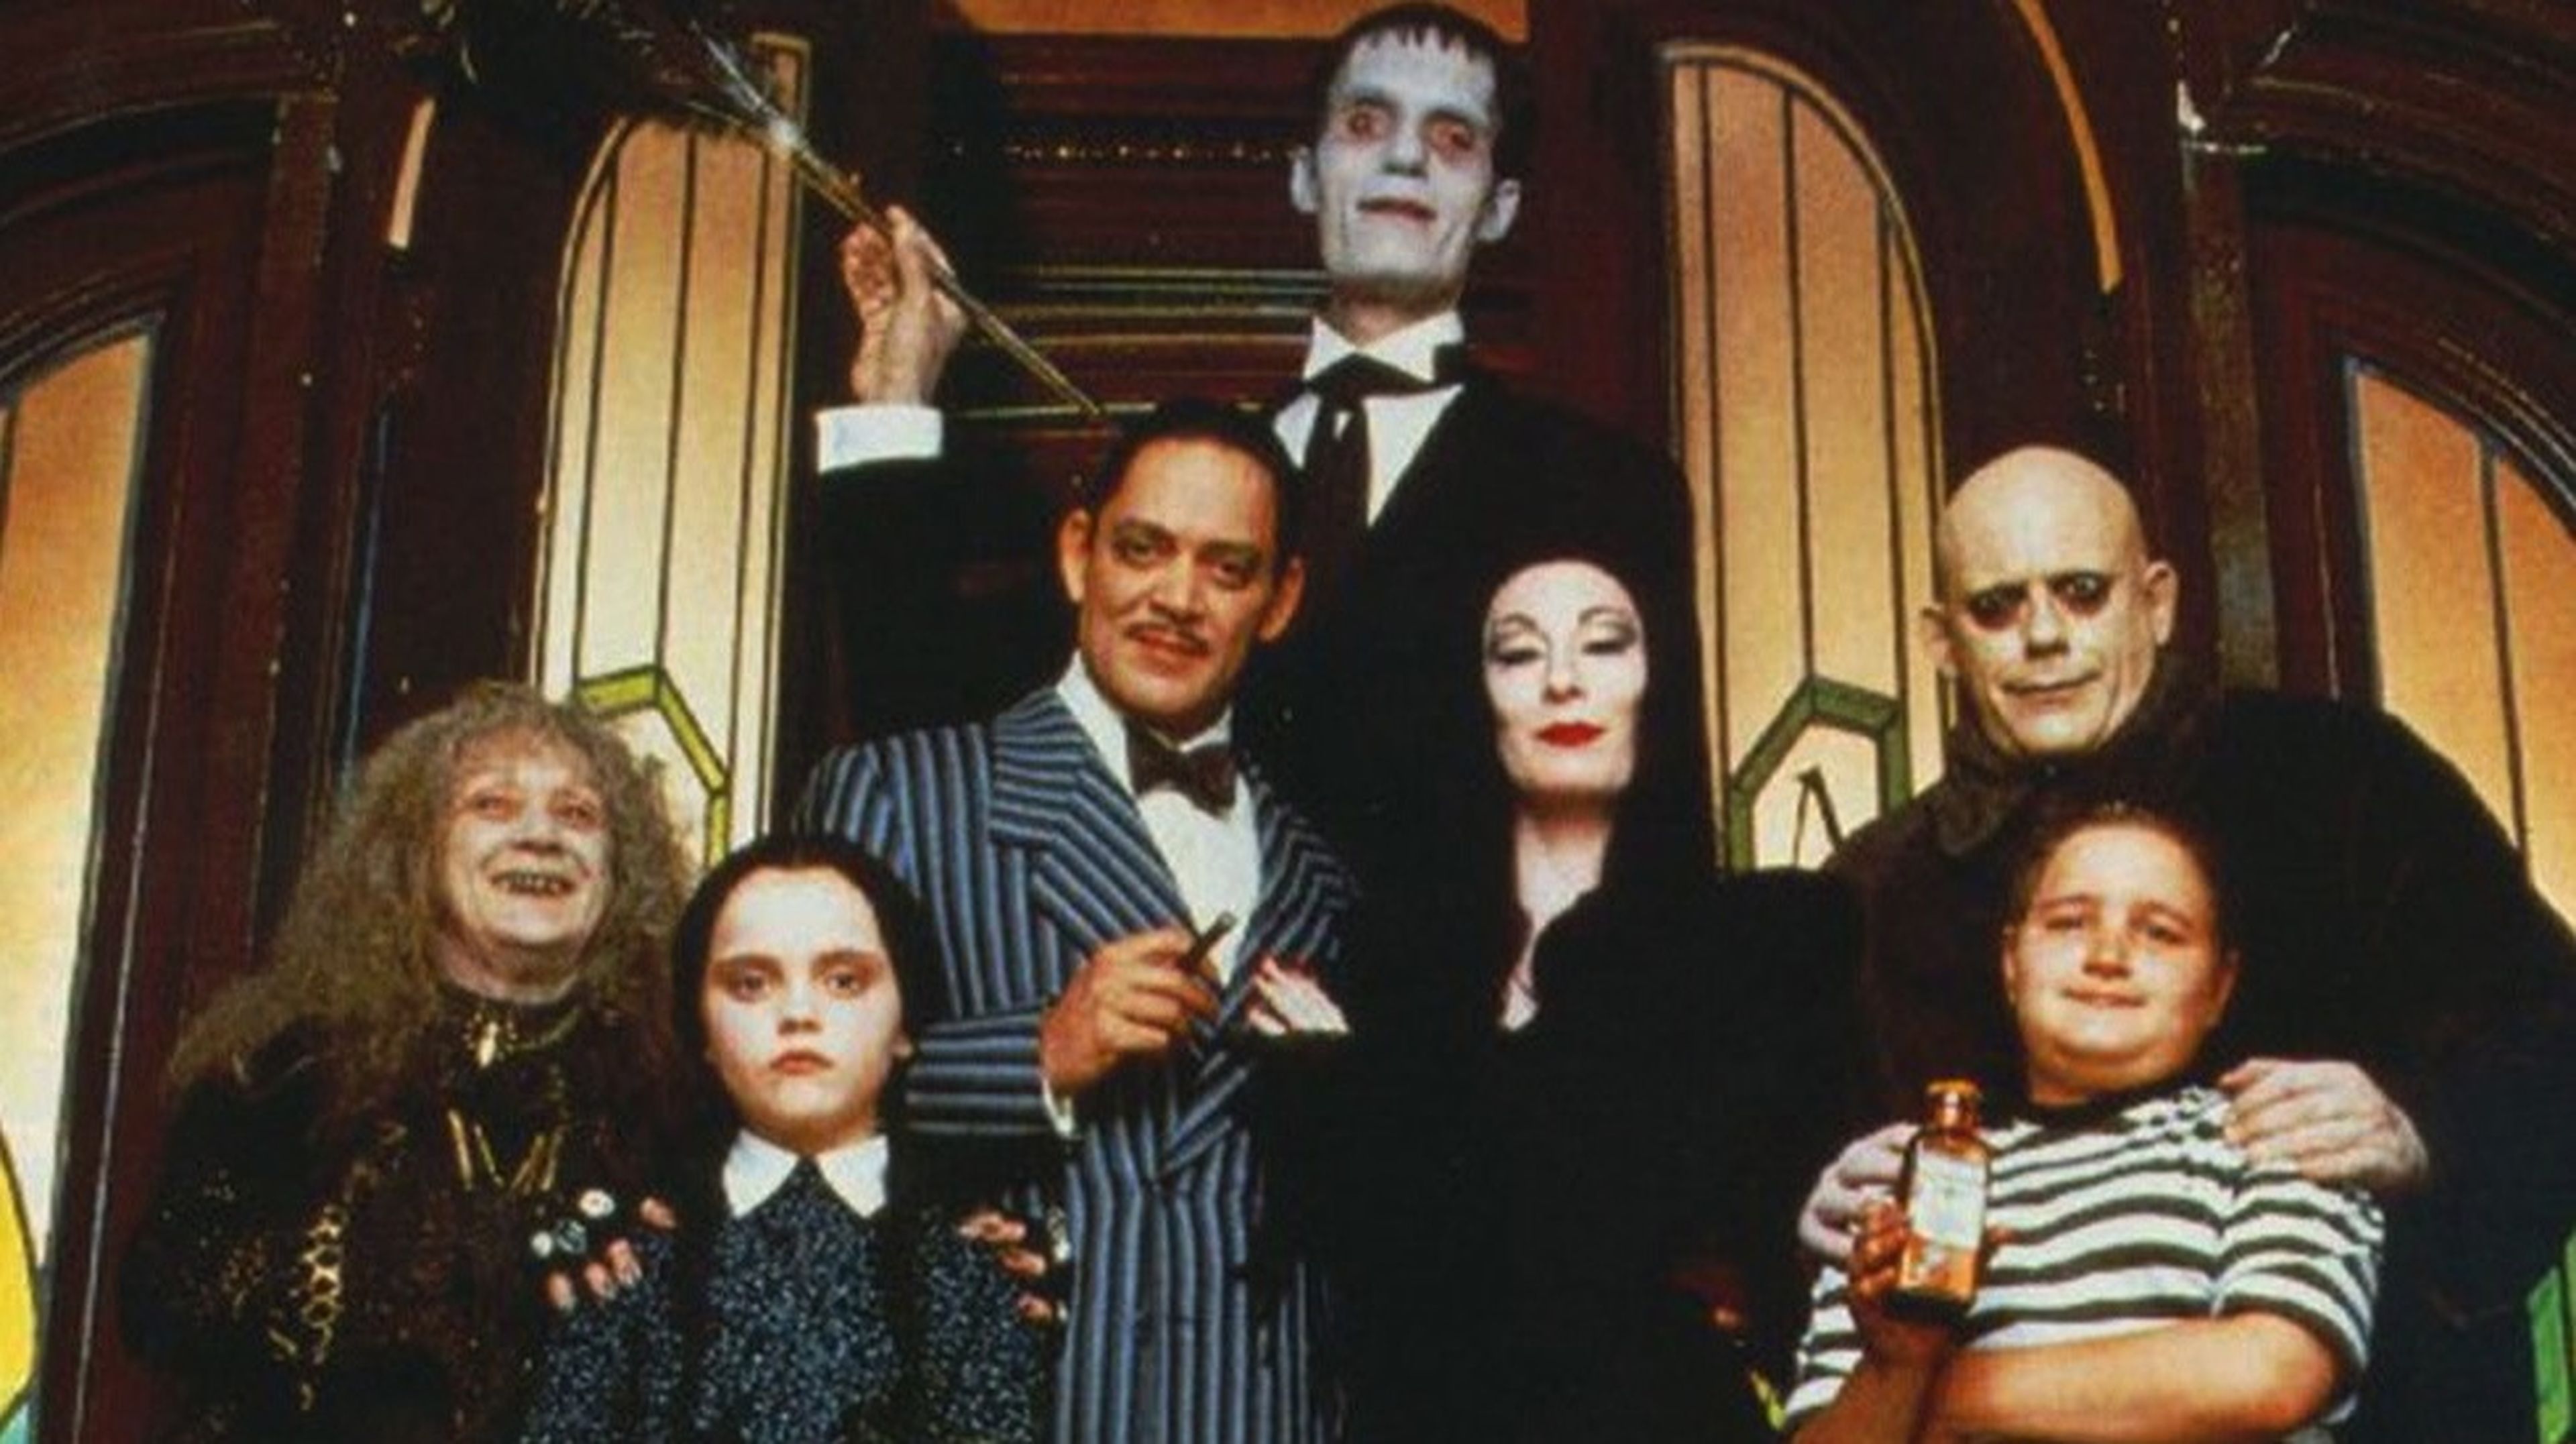 7. La familia Addams